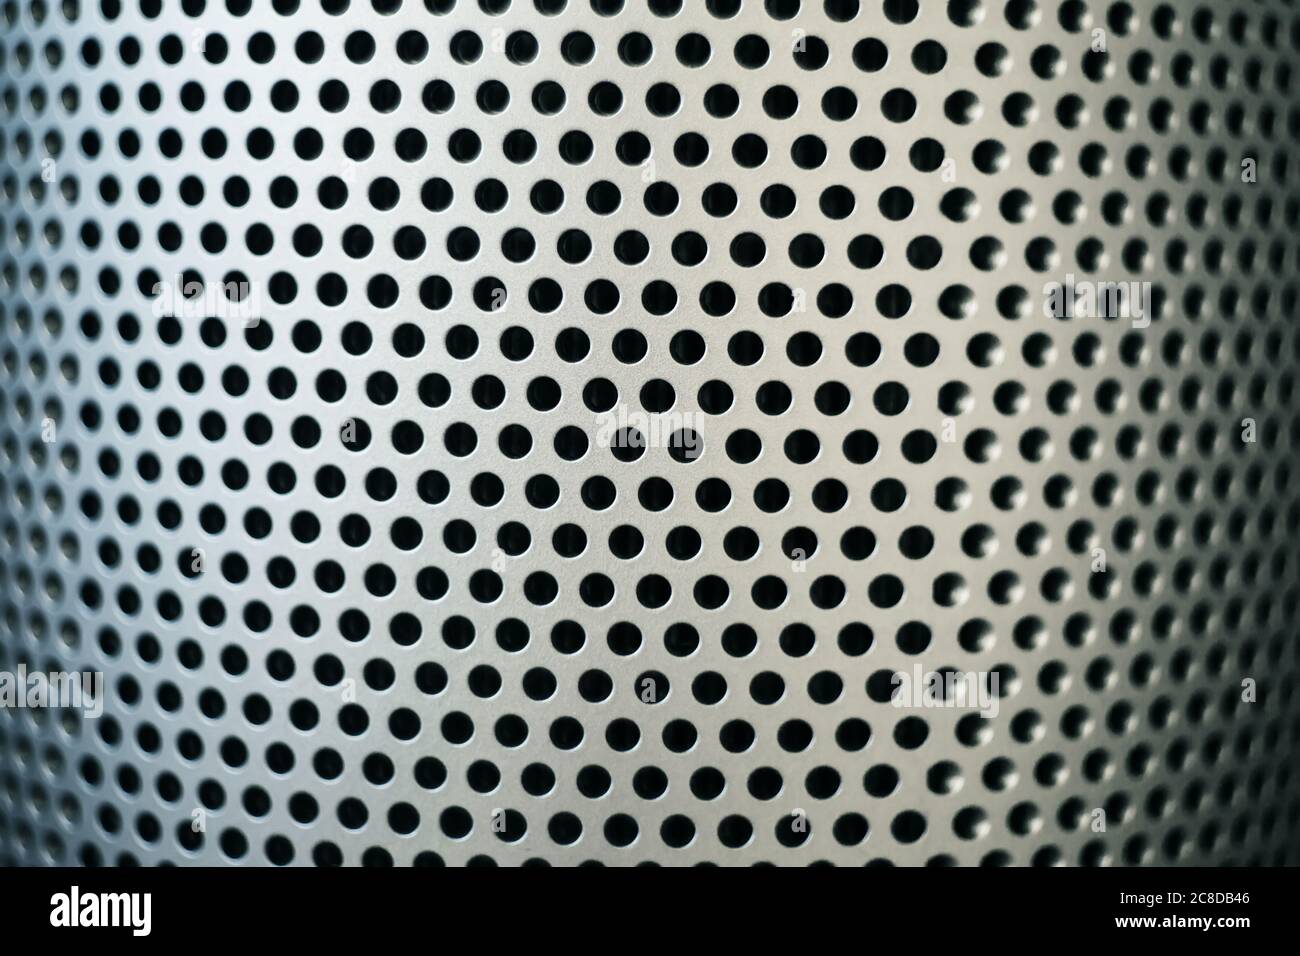 Abstrakte Abbildung einer silbrig geschwungenen Metalloberfläche mit vielen kleinen runden Löchern. Filter. Stockfoto